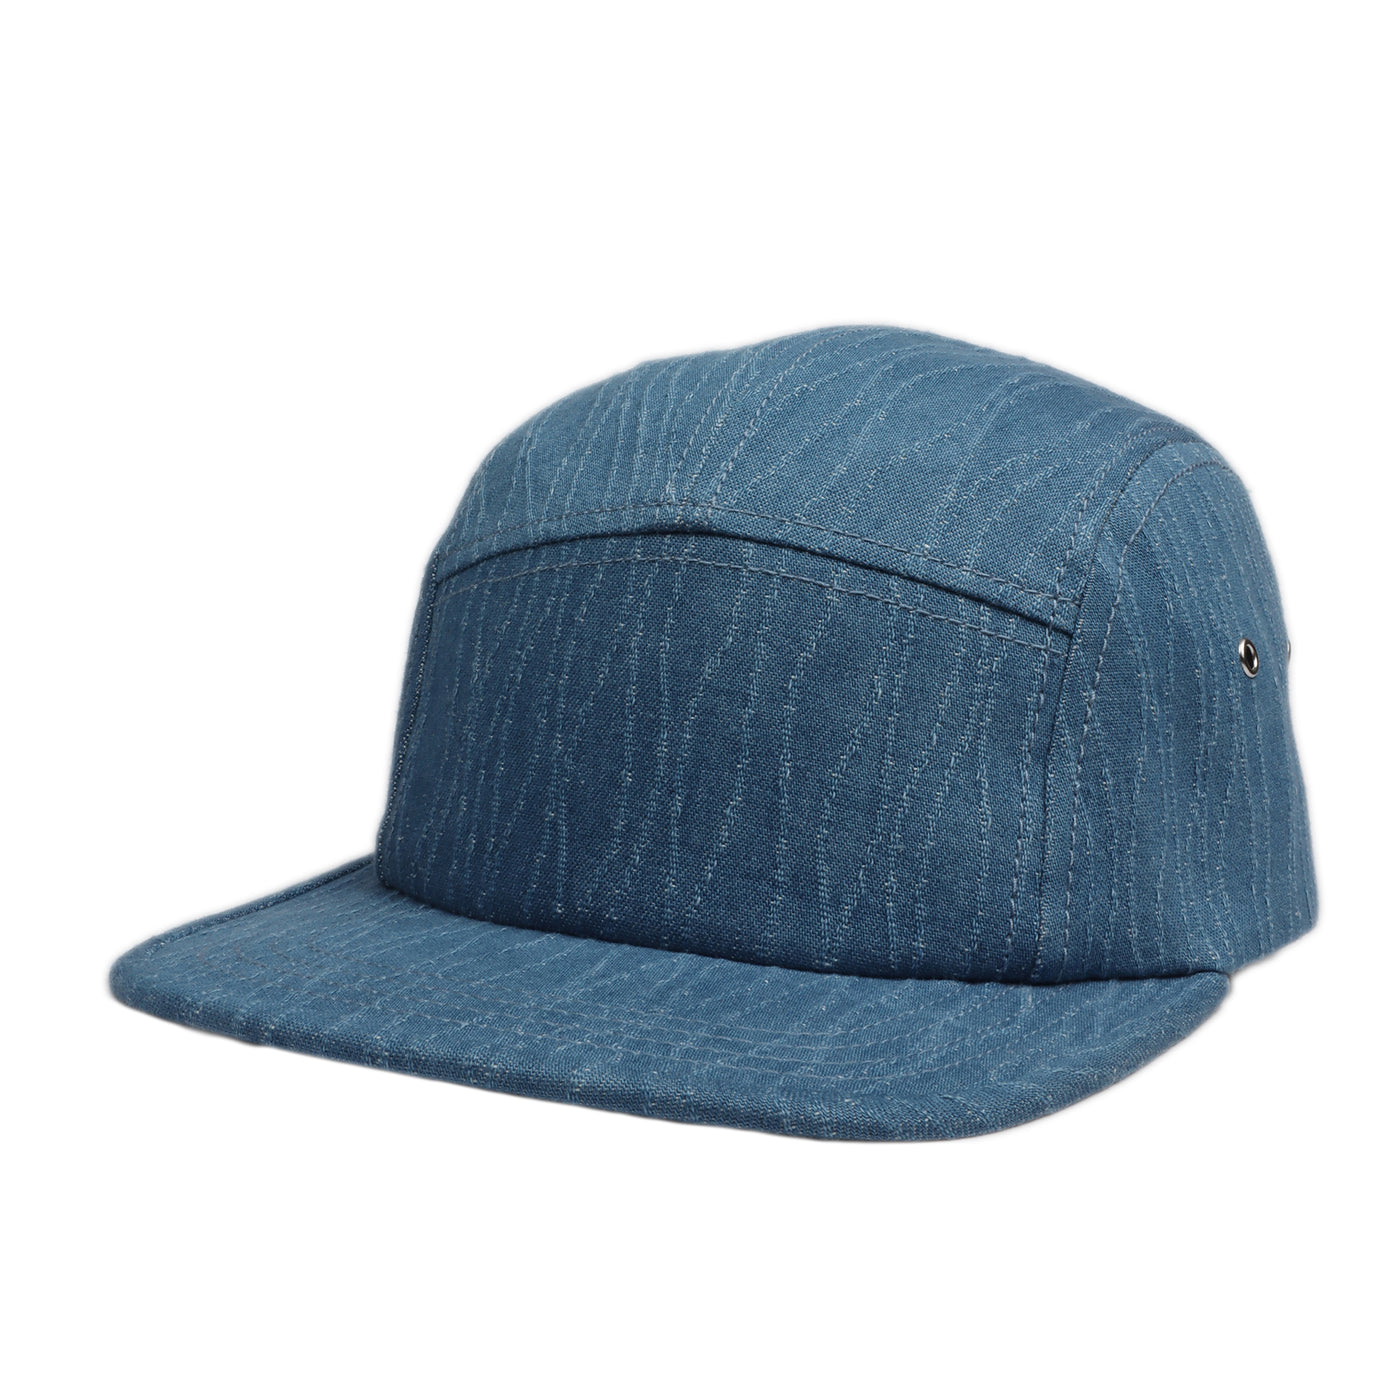 Hatphile Washed Denim 5 Panel Hat Camper Hat